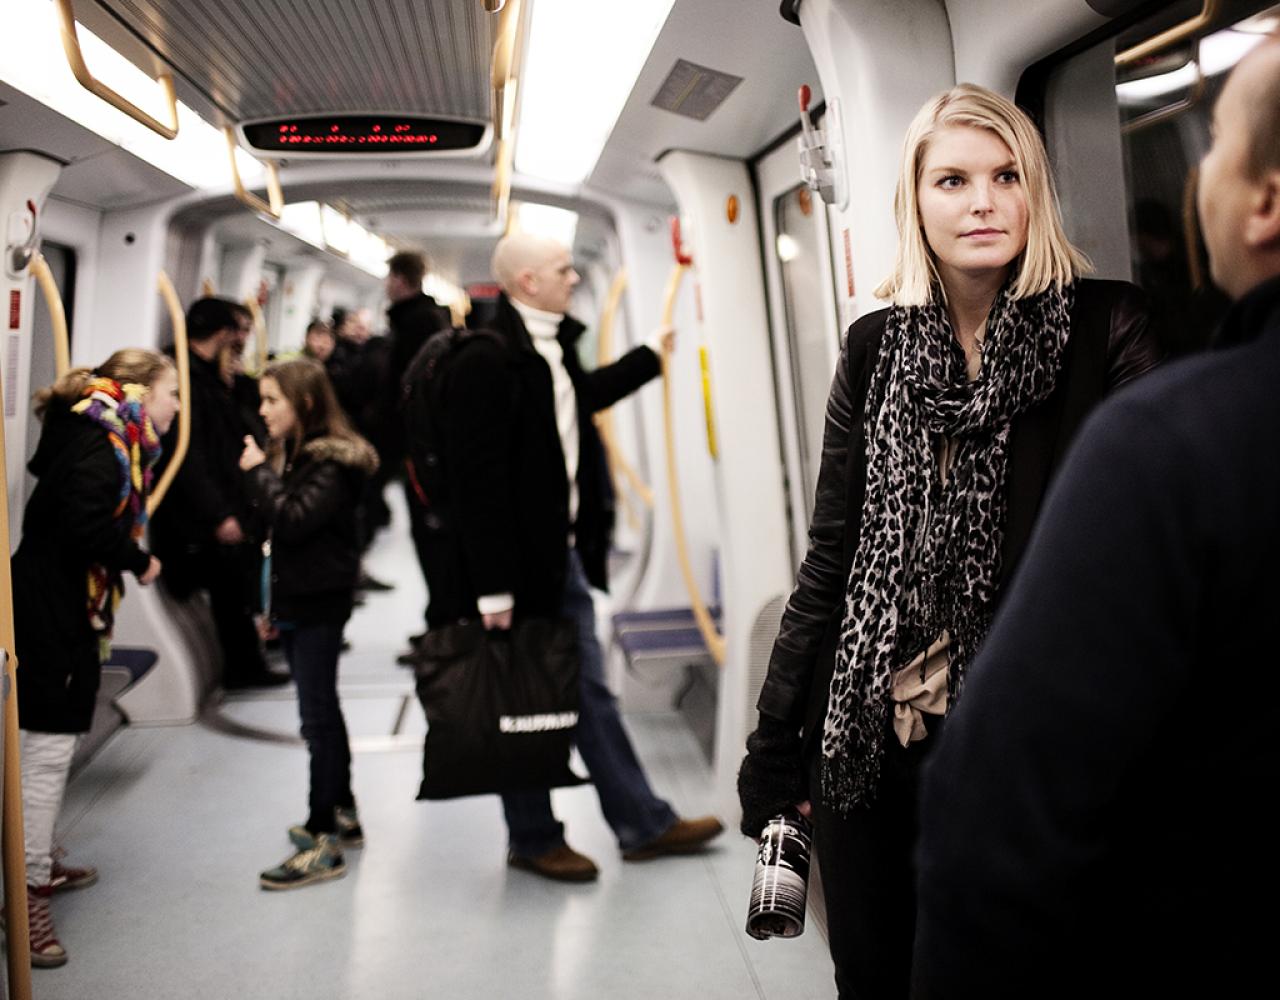 københavns metro passagerer